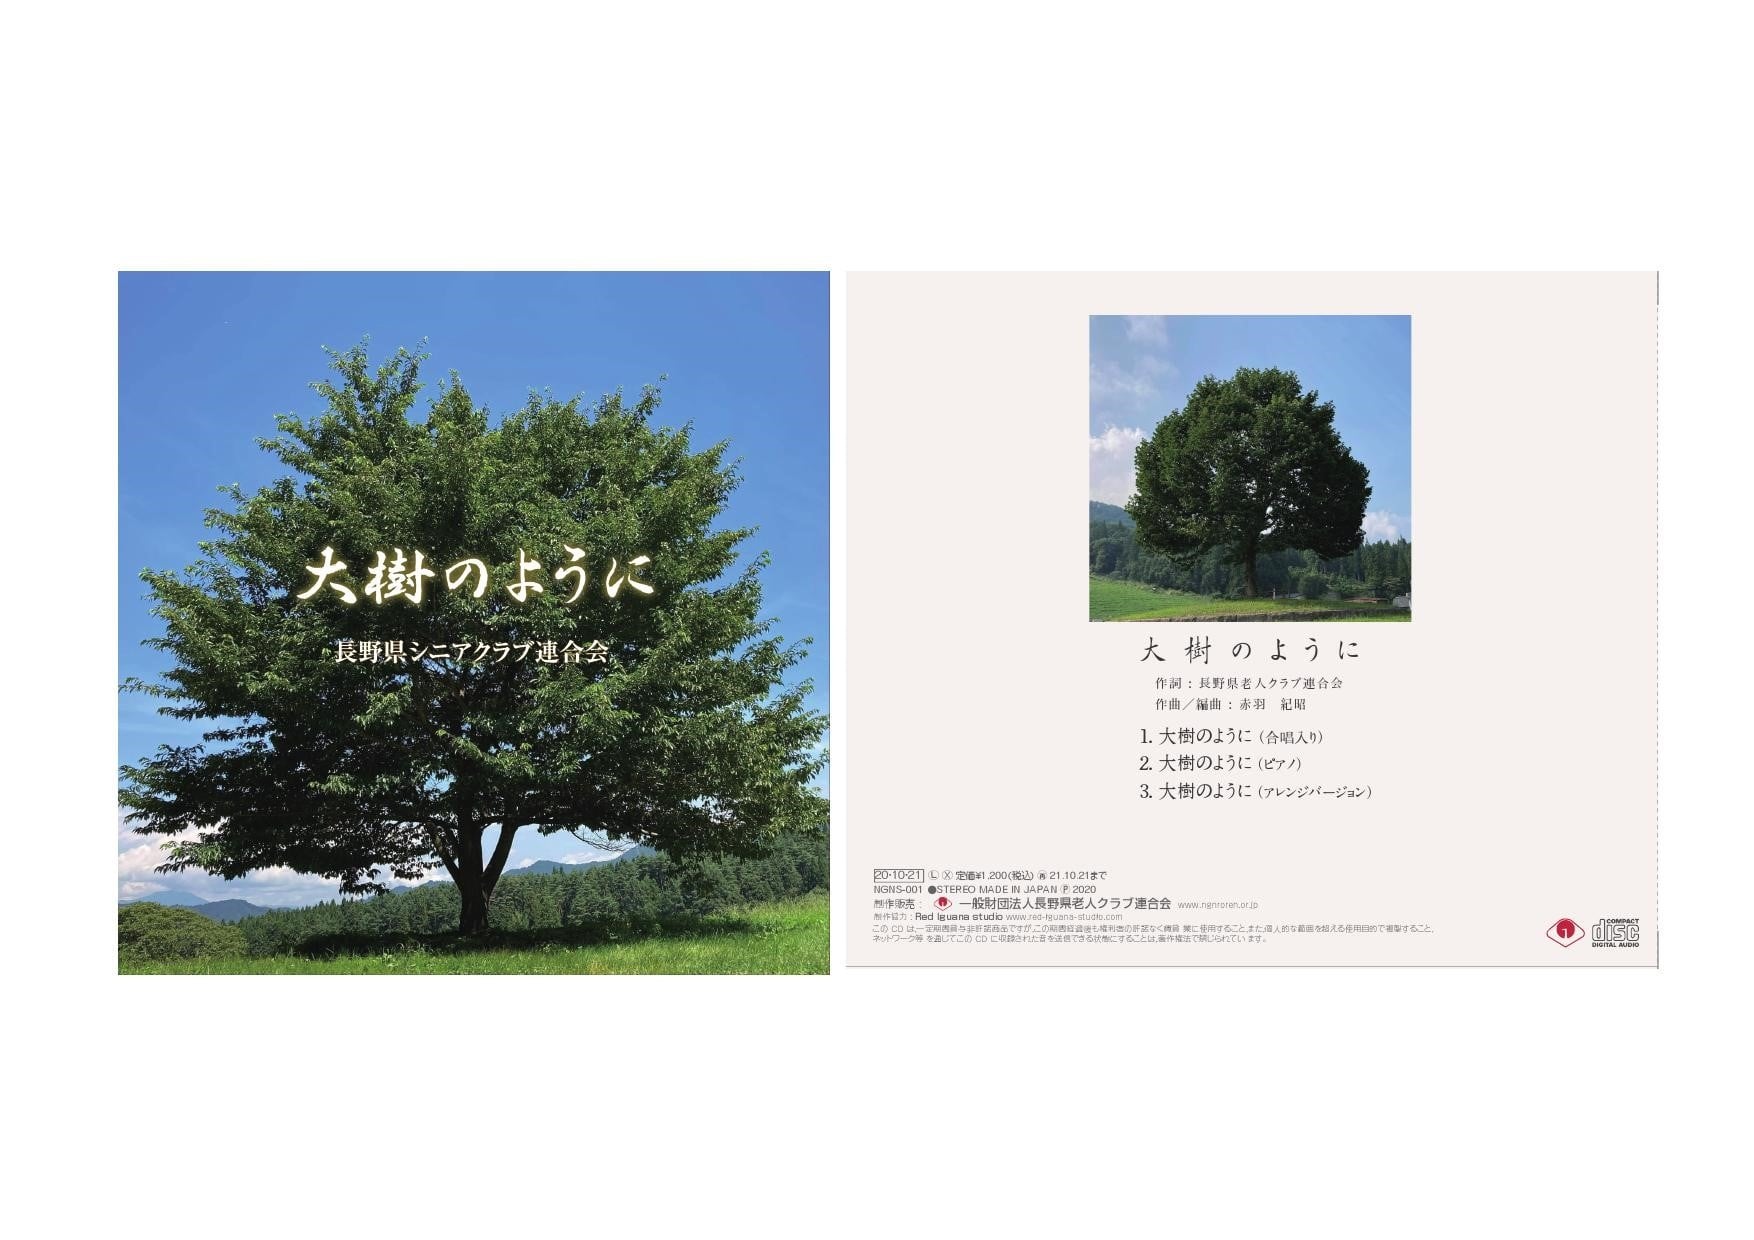 長野県老人クラブ連合会の新たなテーマソング『大樹のように』が完成